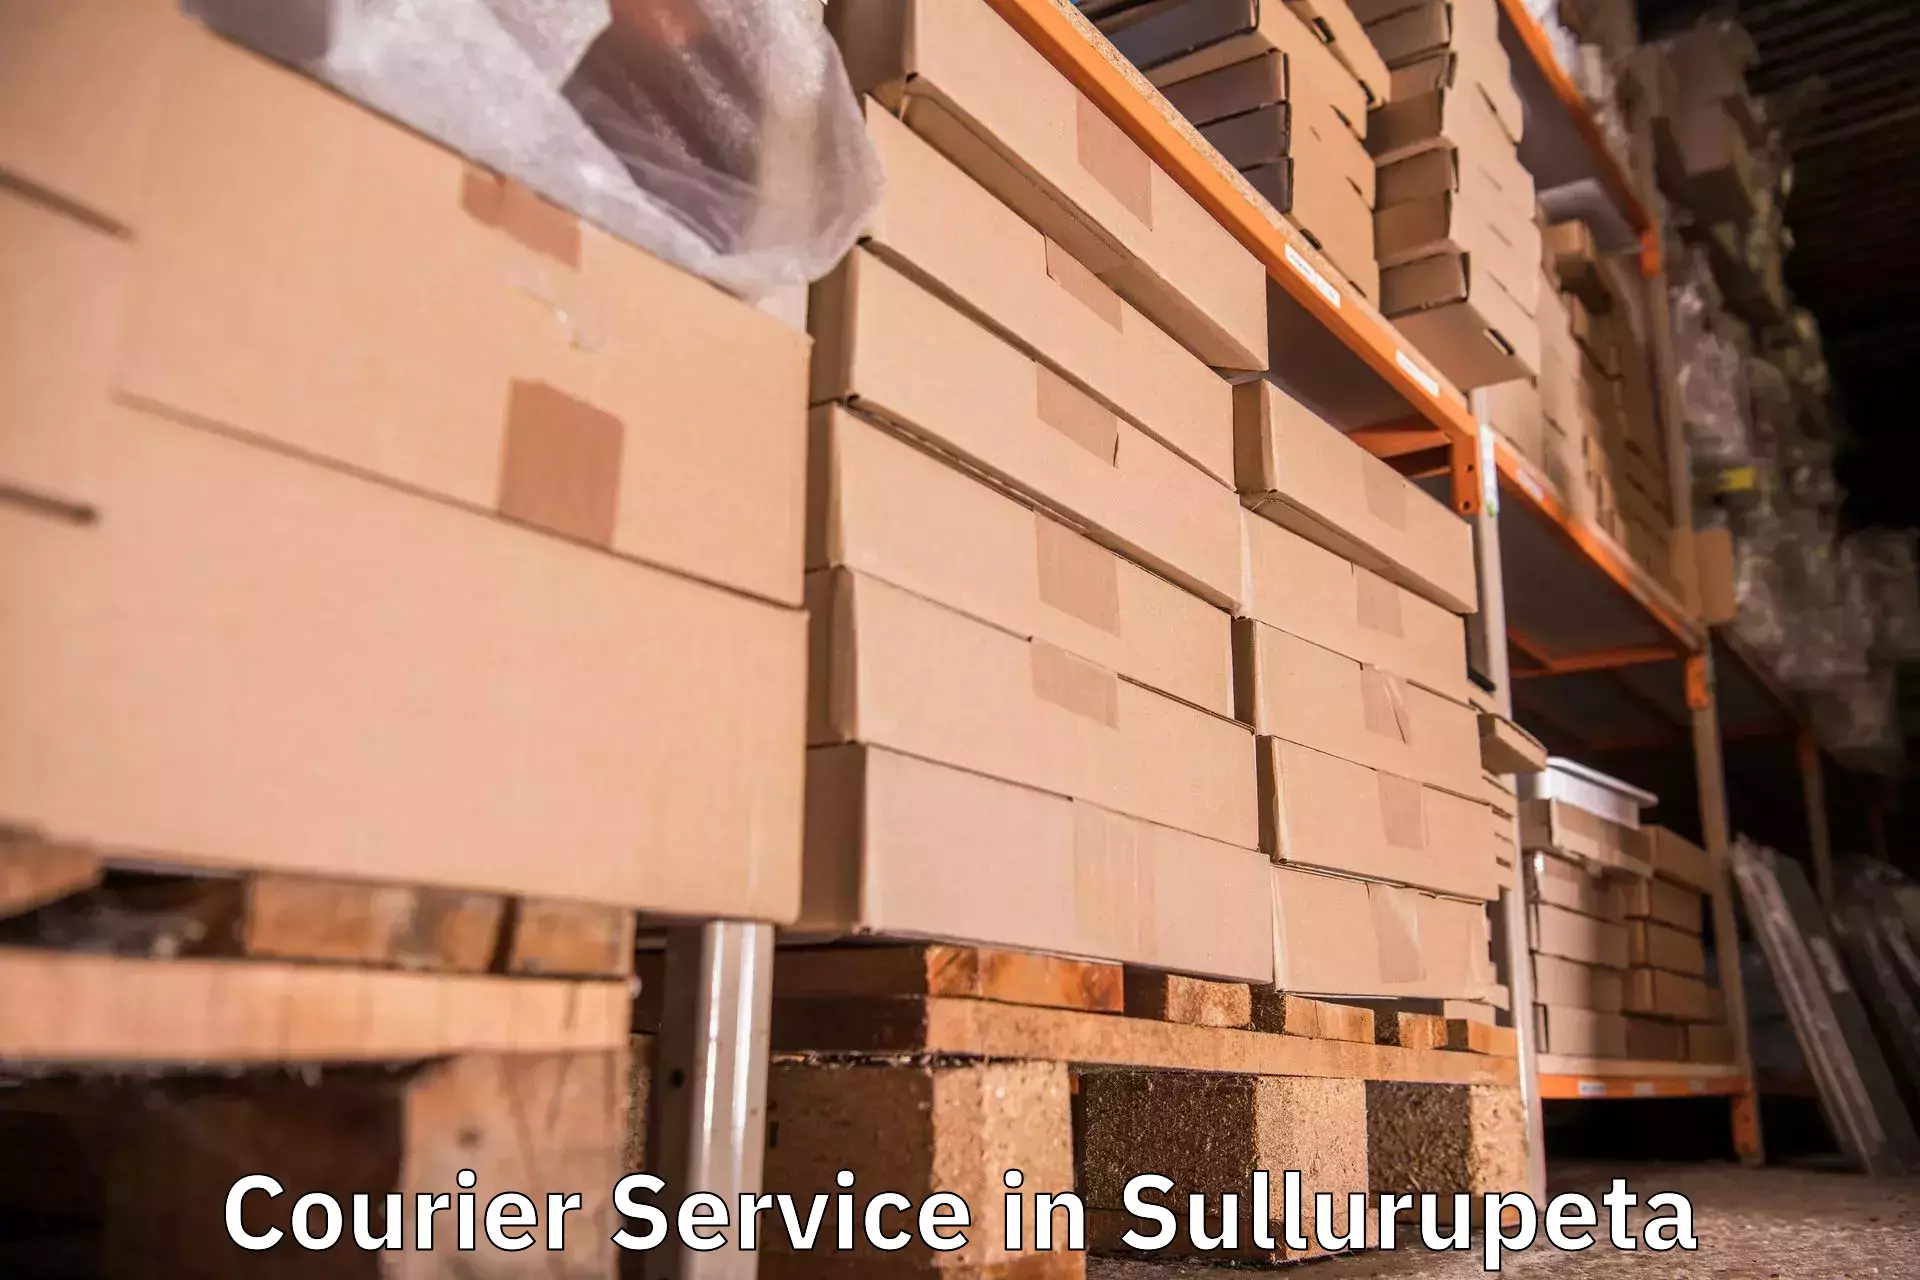 Efficient logistics management in Sullurupeta